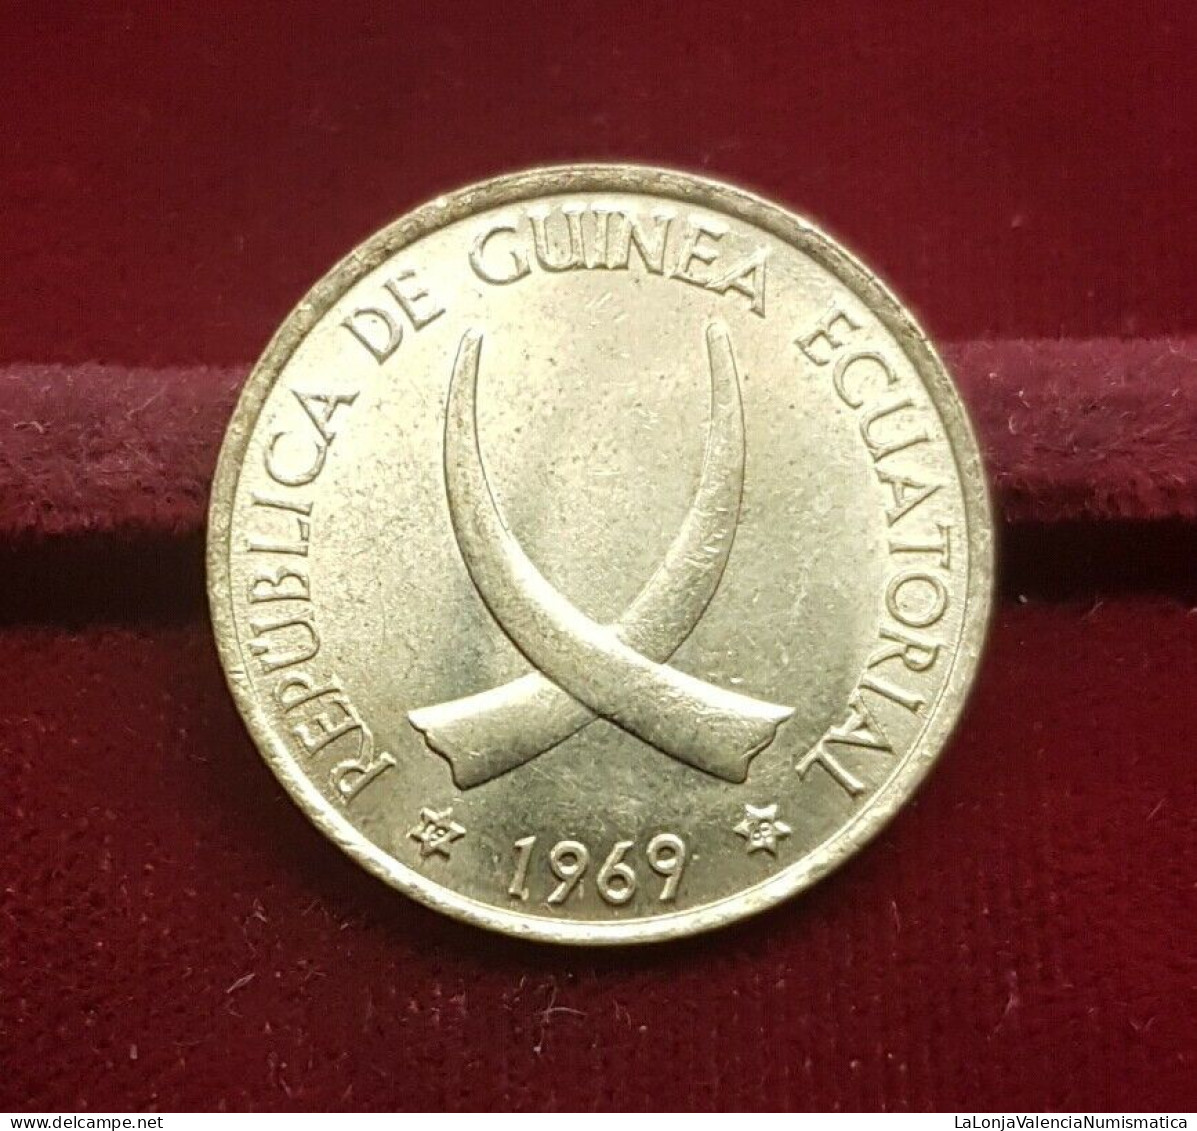 Guinea Ecuatorial Equatorial 1 Peseta Guineana 1969 *69 Km 1 Sc Unc - Guinea Ecuatorial